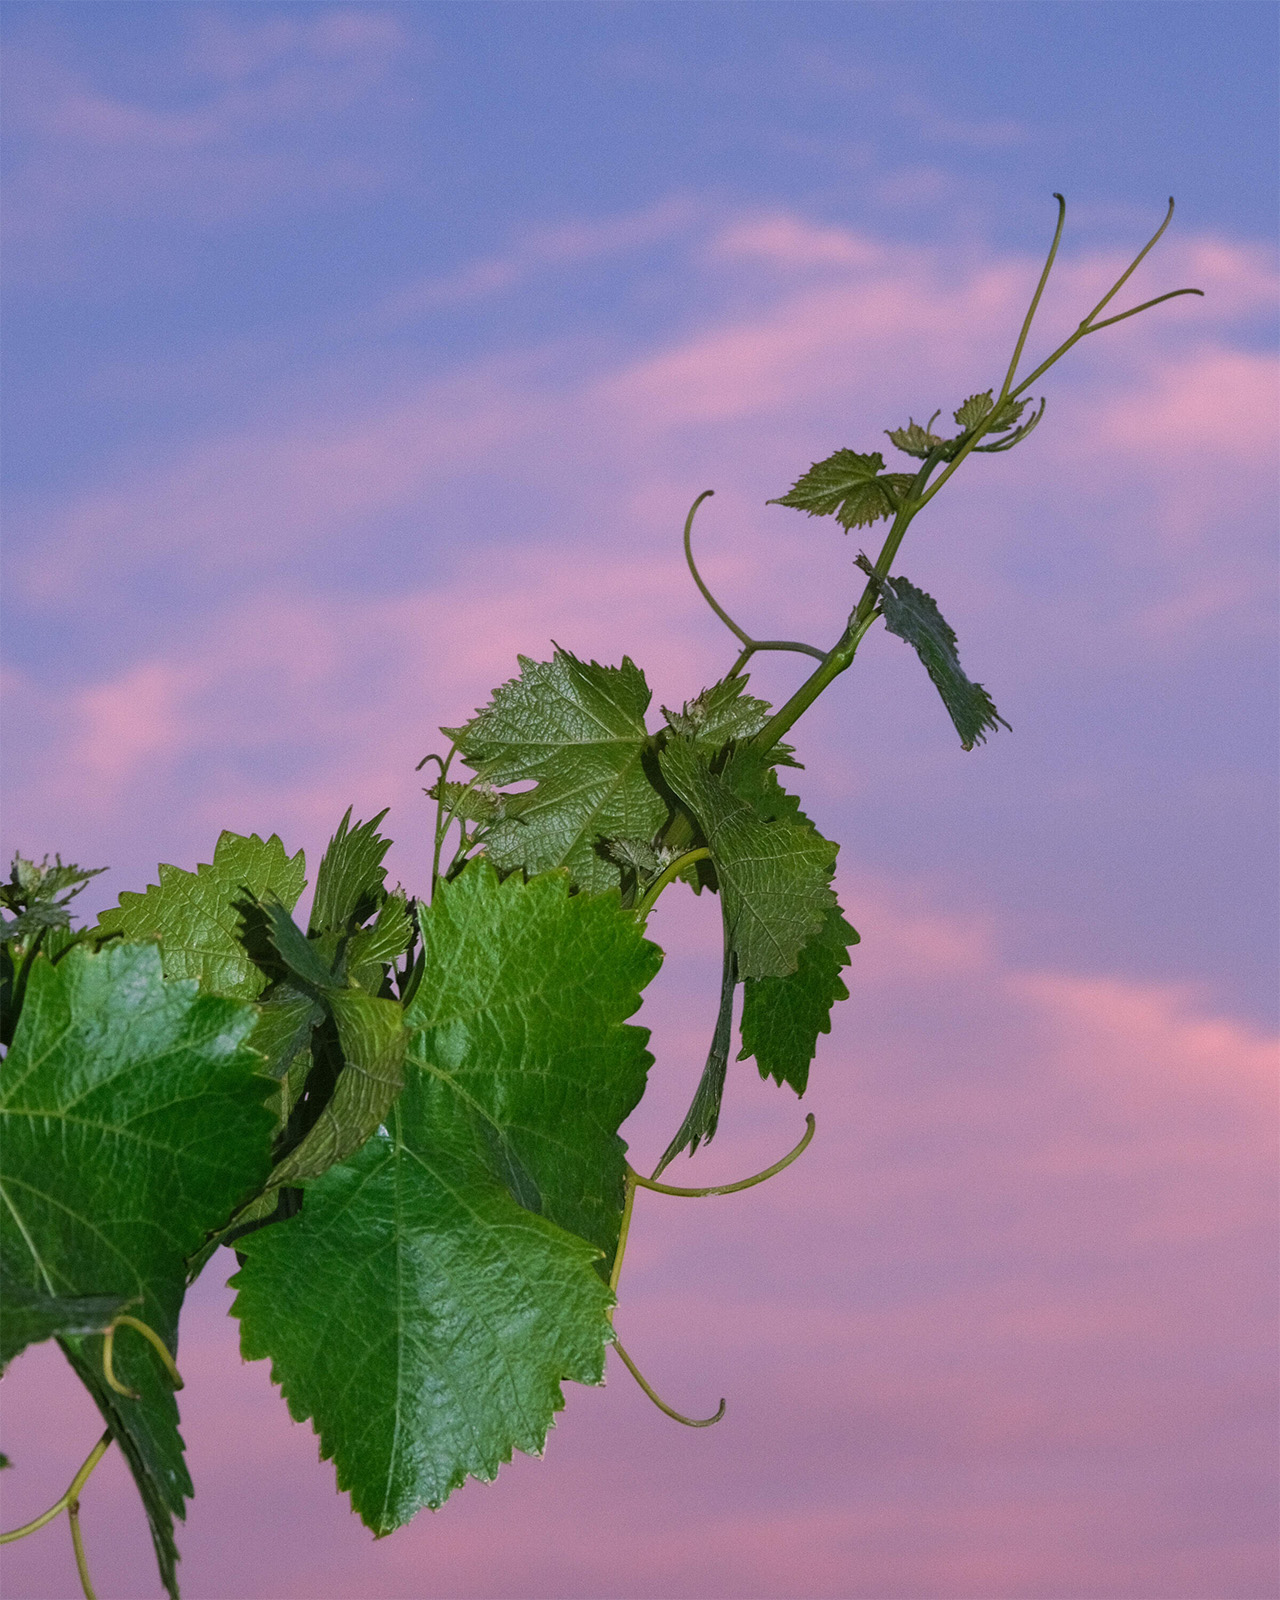 Vine reaching towards purple sky